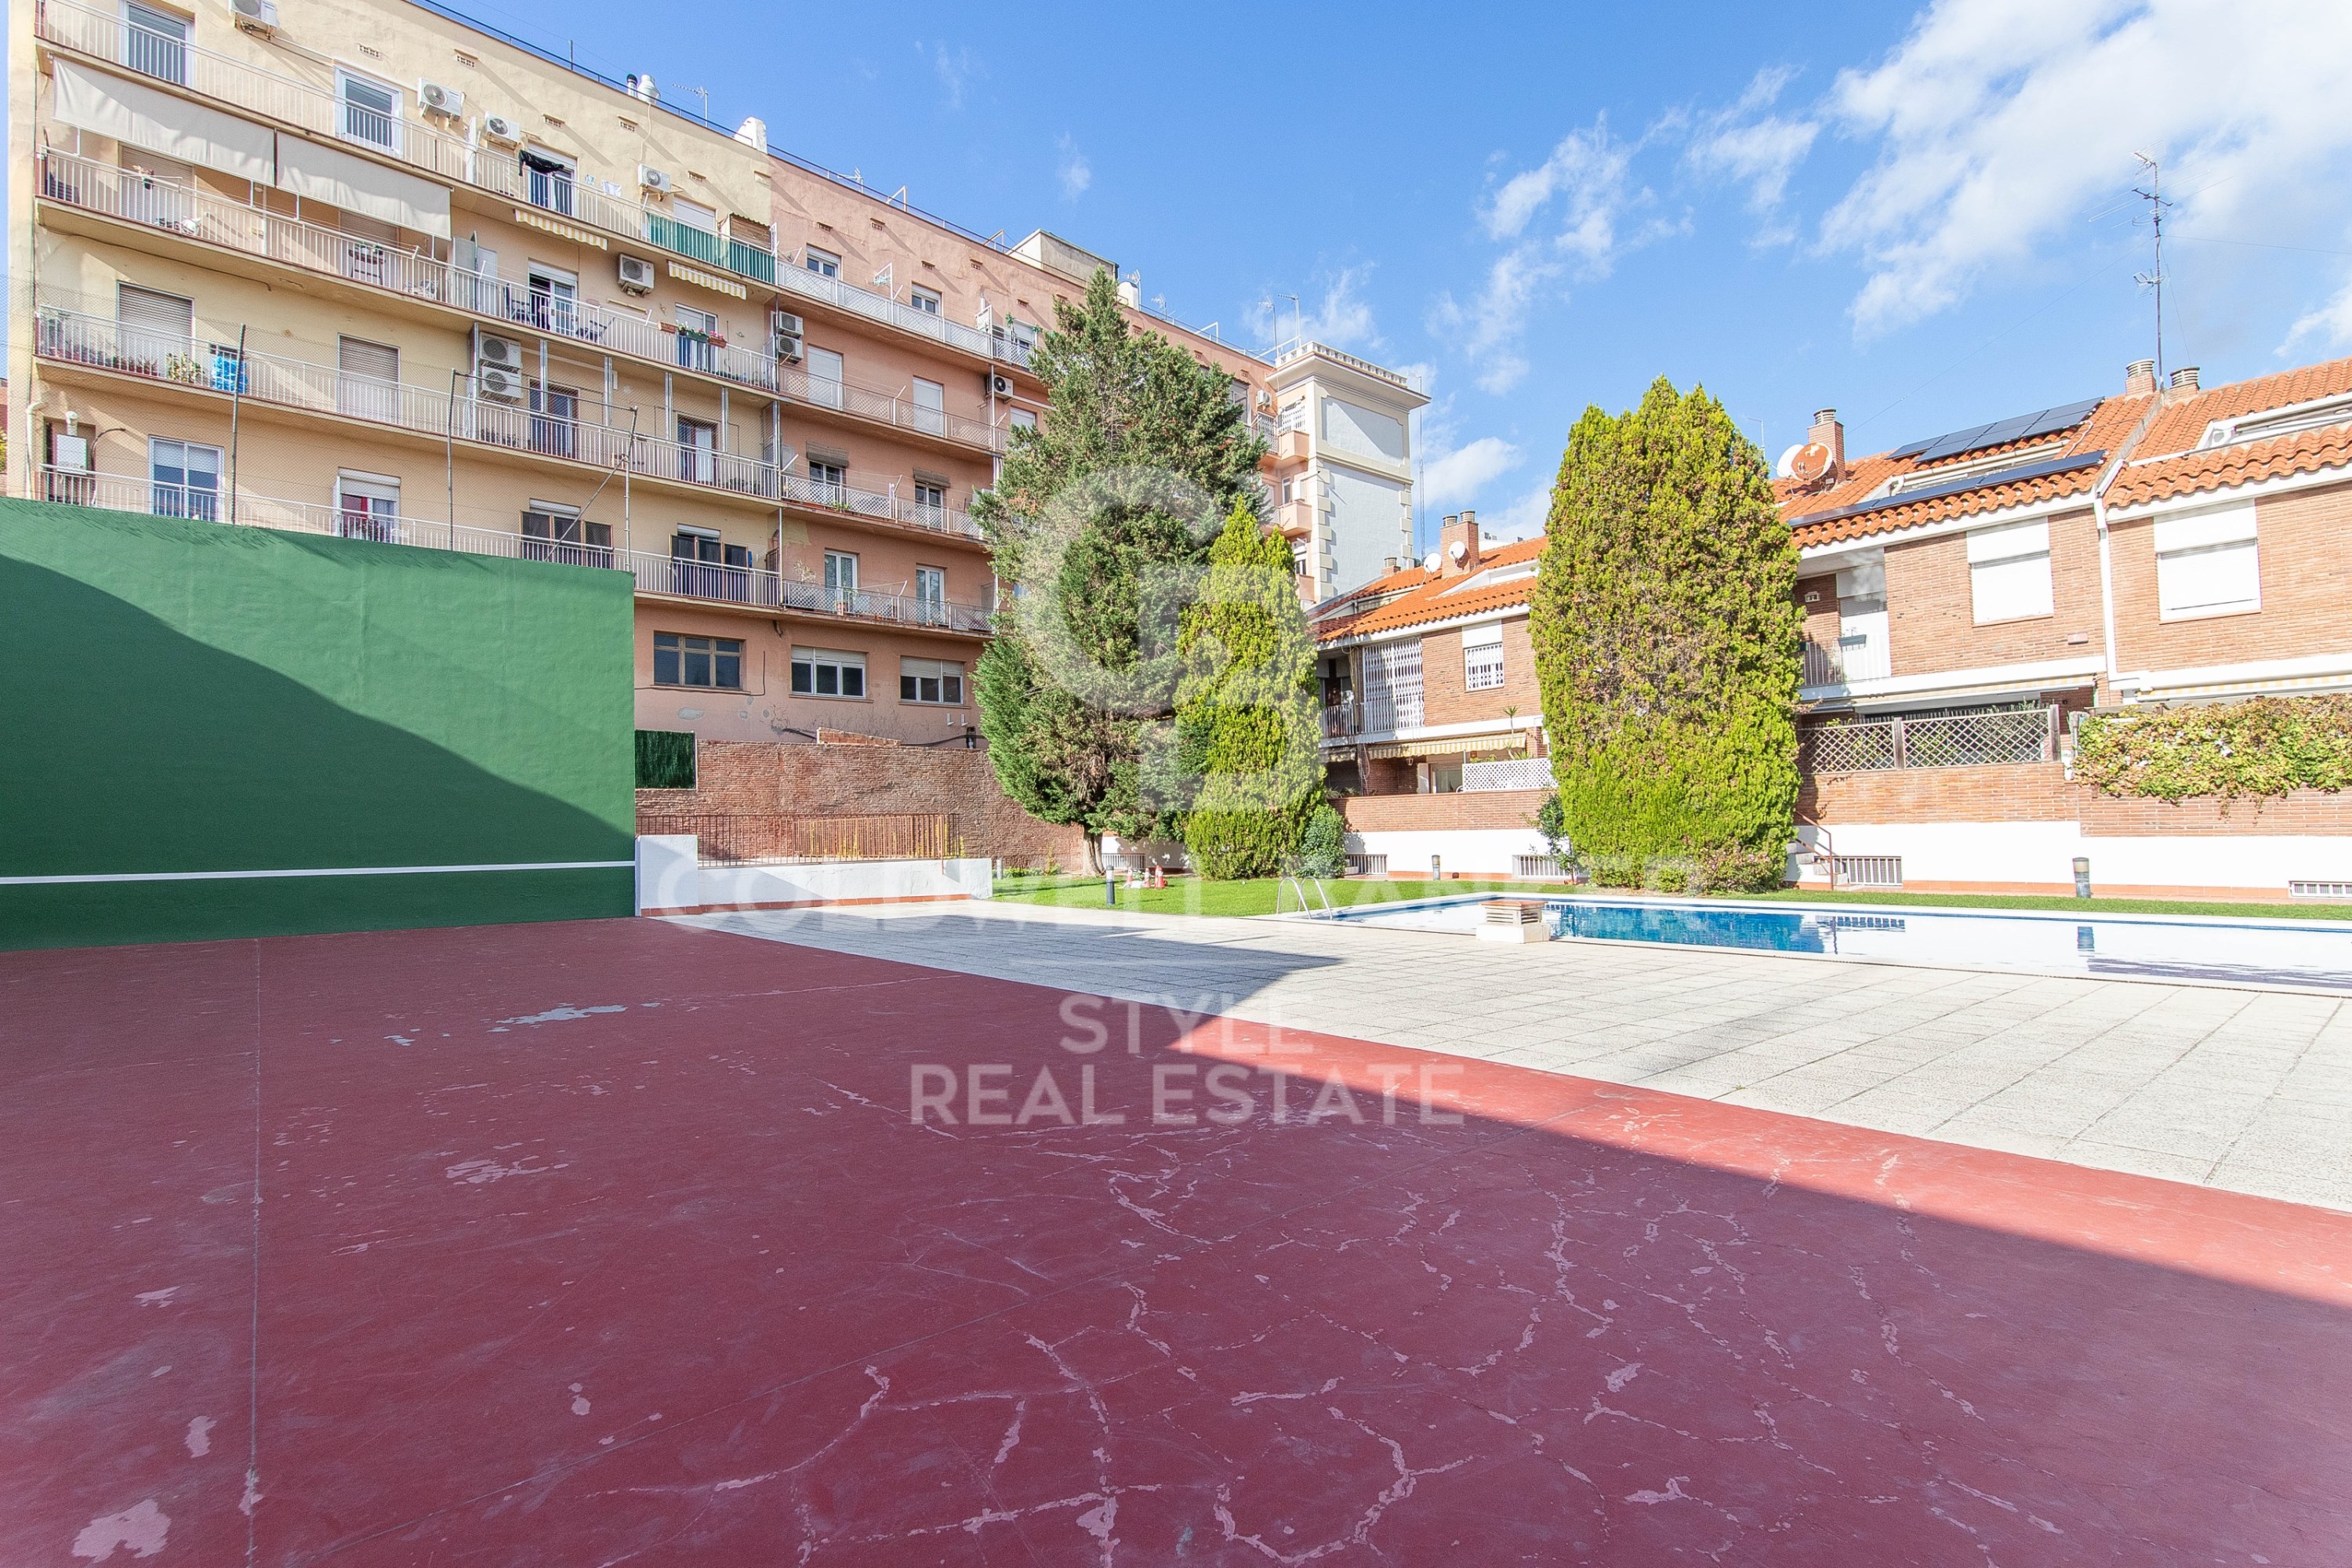 Se alquila casa adosada esquinera en pleno centro de Sabadell de 6 habitaciones con piscina comunitaria